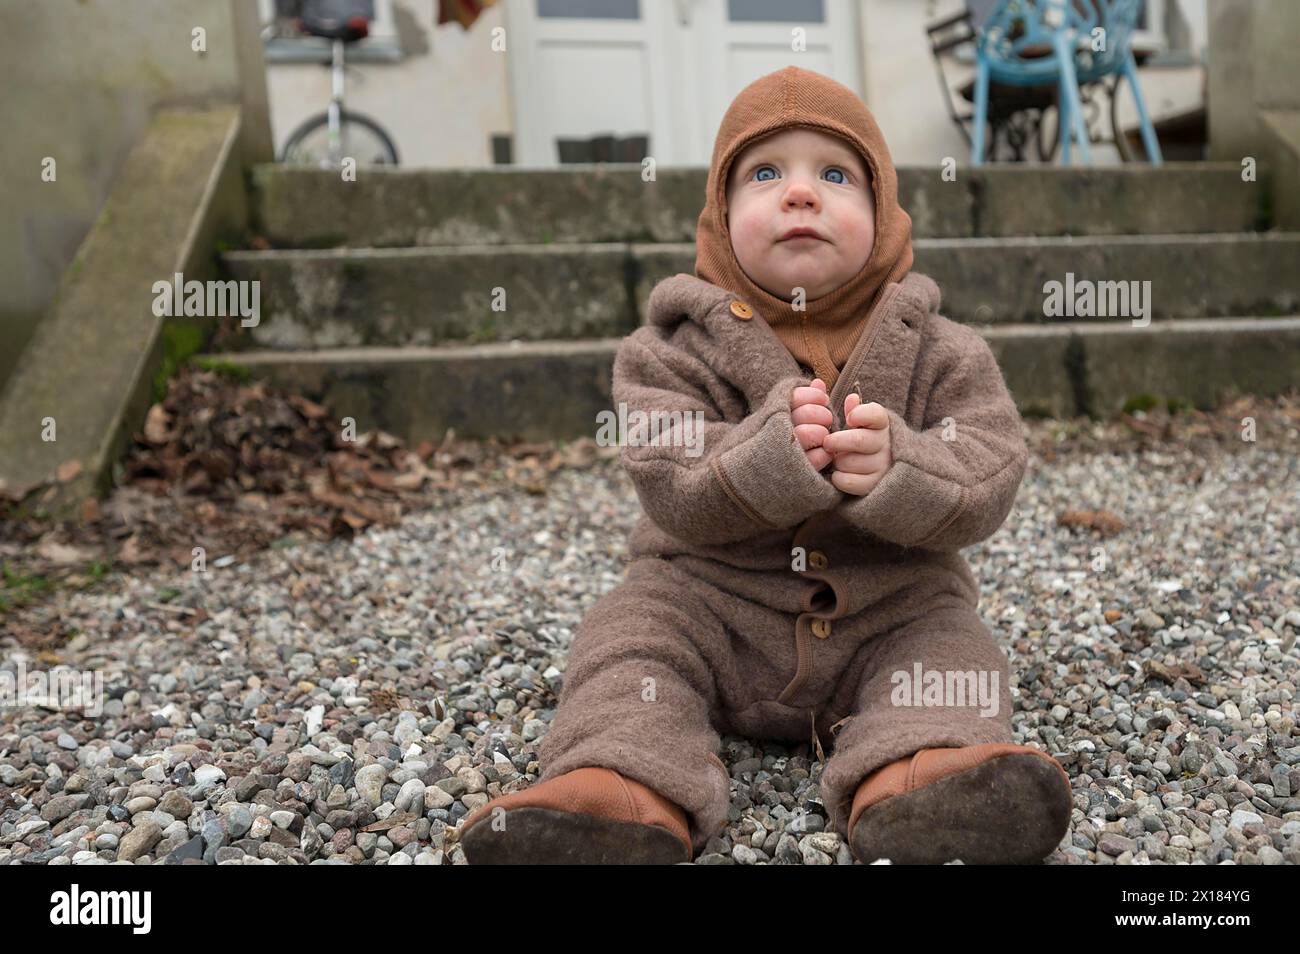 Kleines Kind, 8 Monate, warm eingewickelt, auf dem Kies sitzend und mit Steinen spielend, Mecklenburg-Vorpommern, Deutschland Stockfoto